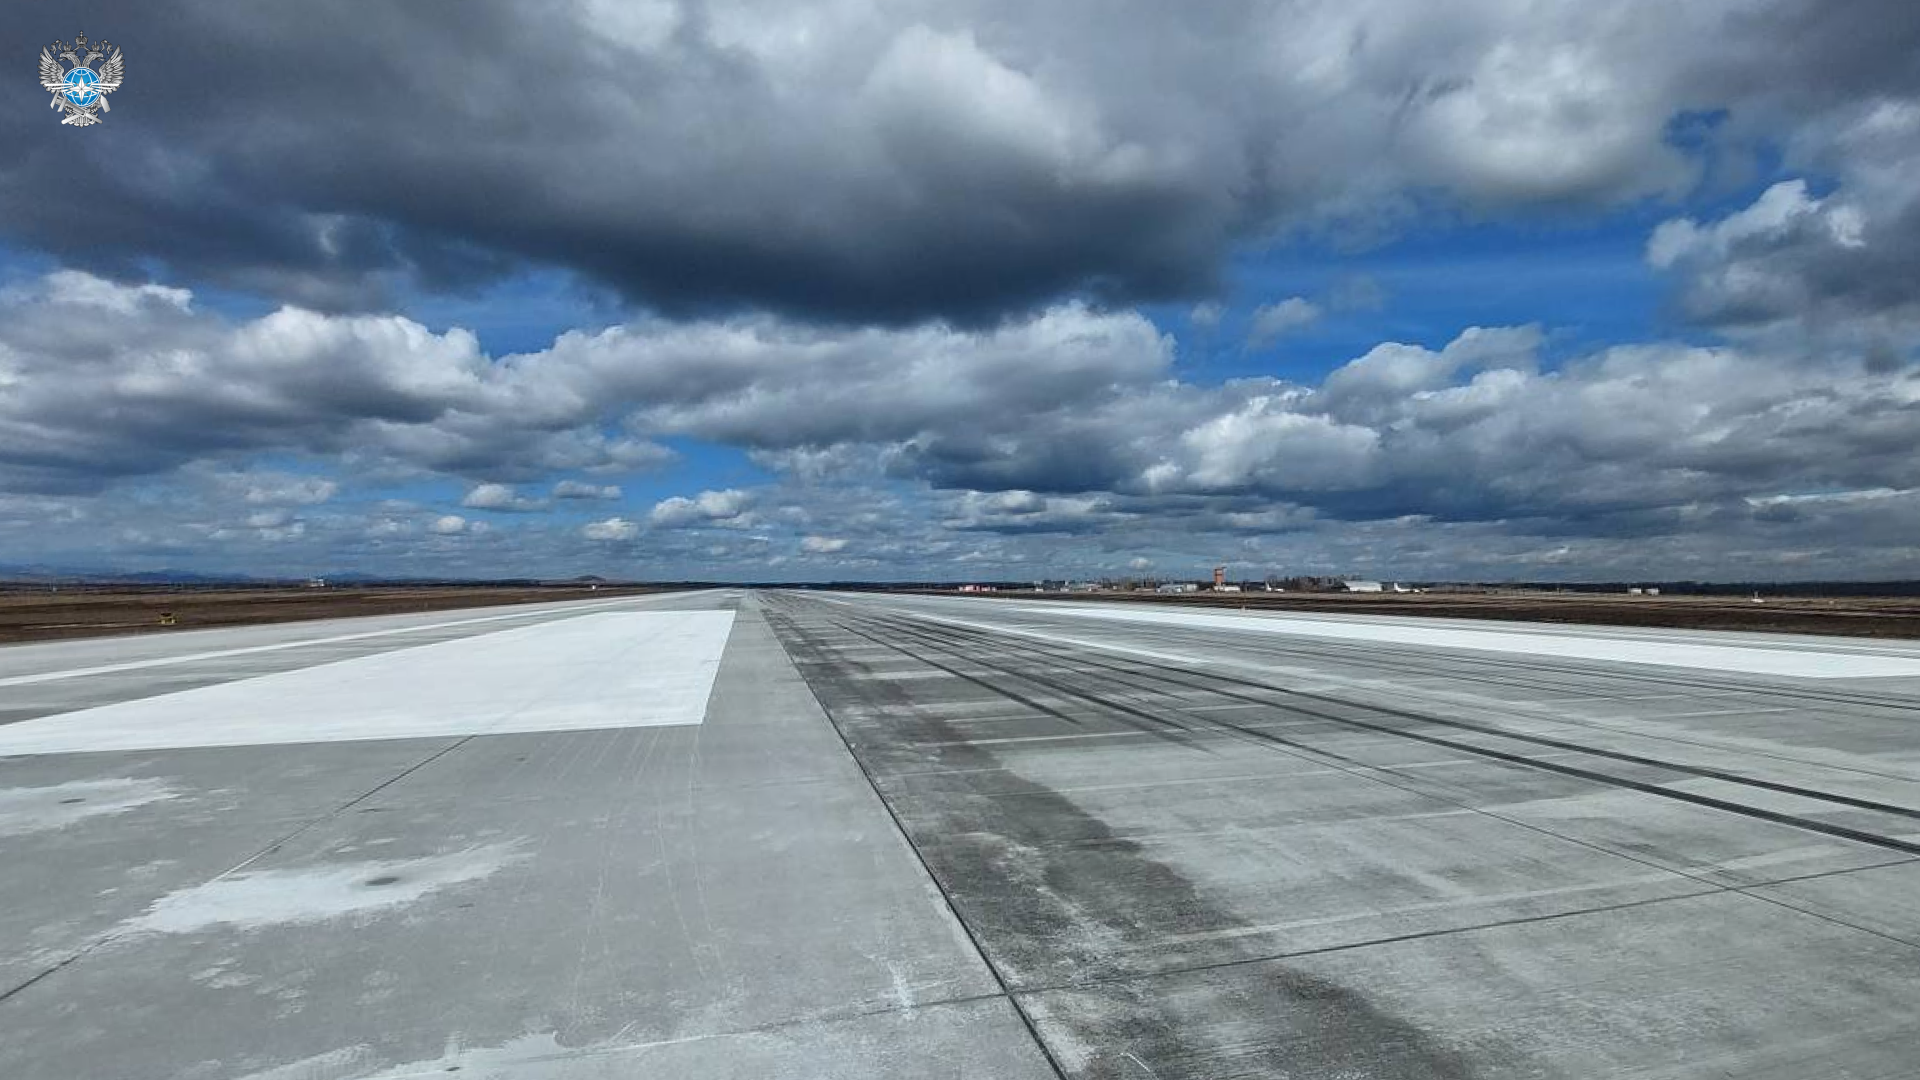 В международном аэропорту Магнитогорска продолжается реконструкция аэродромной инфраструктуры